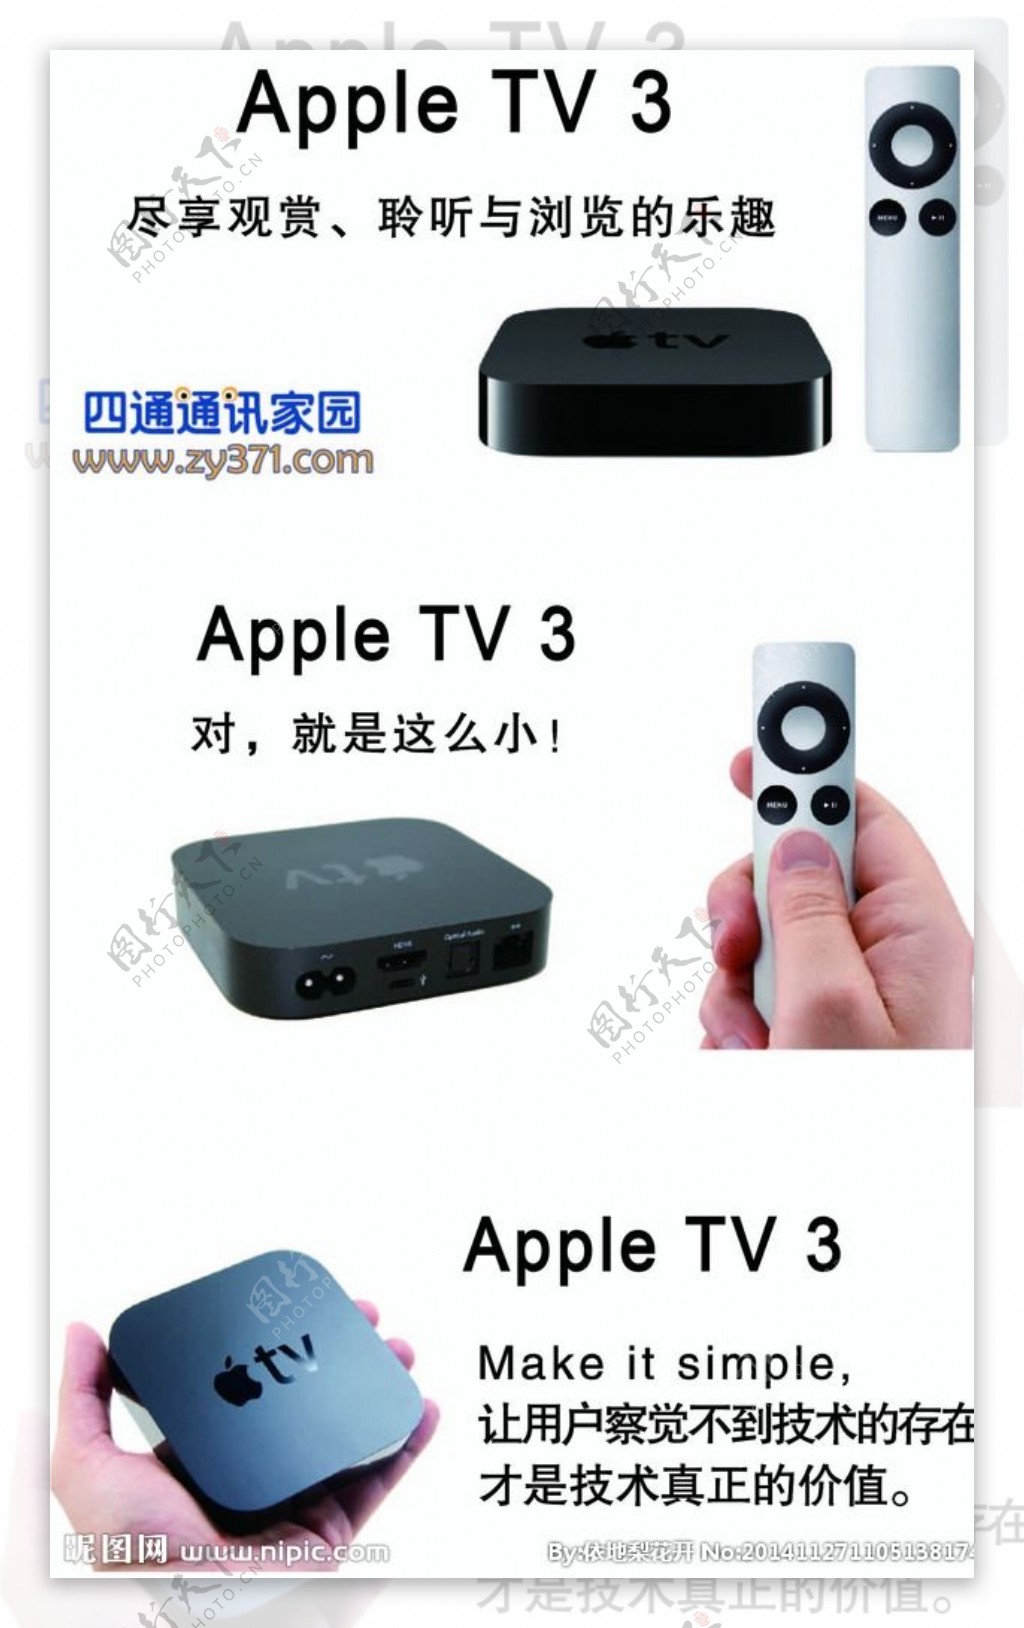 AppleTV3产品图片